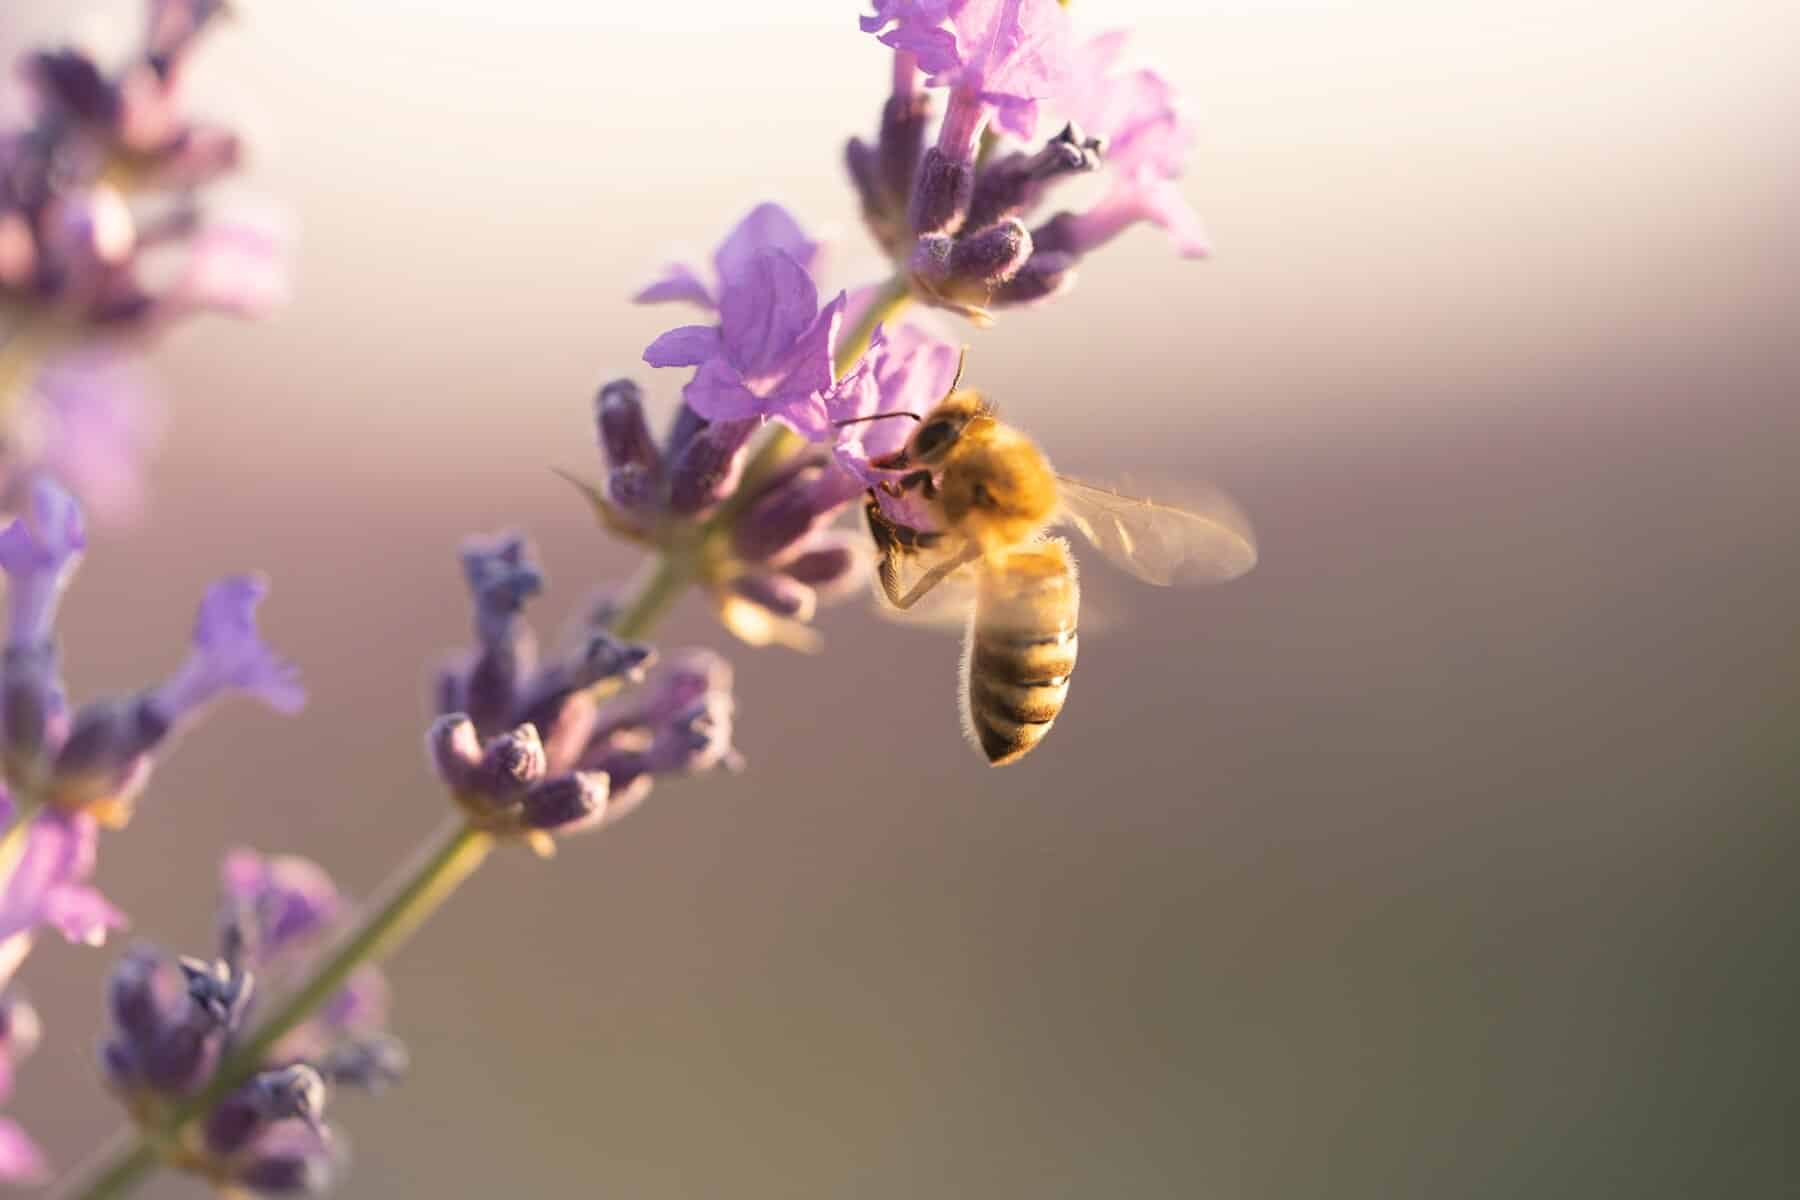 20 май е обявен за Световен ден на пчелите през